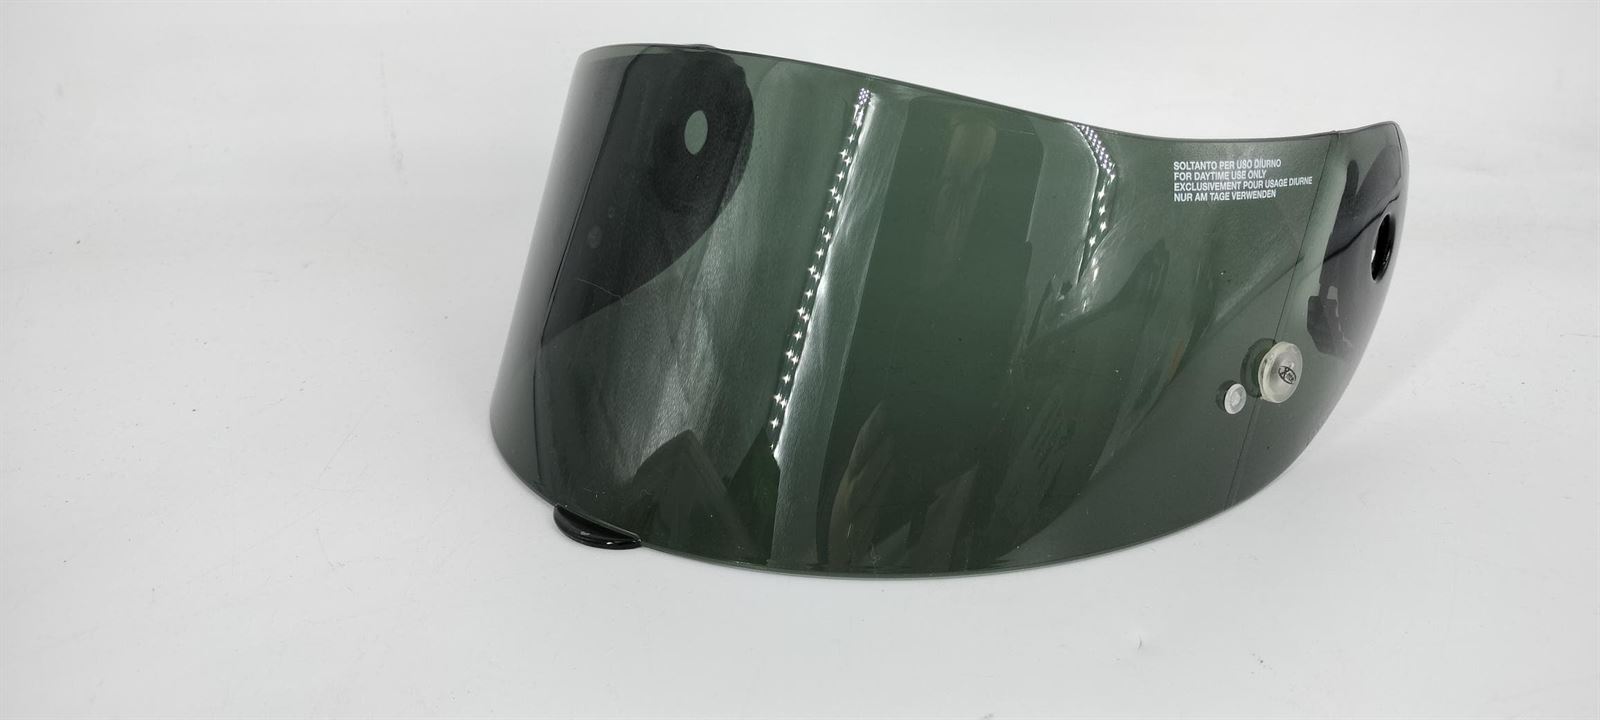 Pantalla casco integral Nolan X-lite X-801 ahumada - Imagen 1